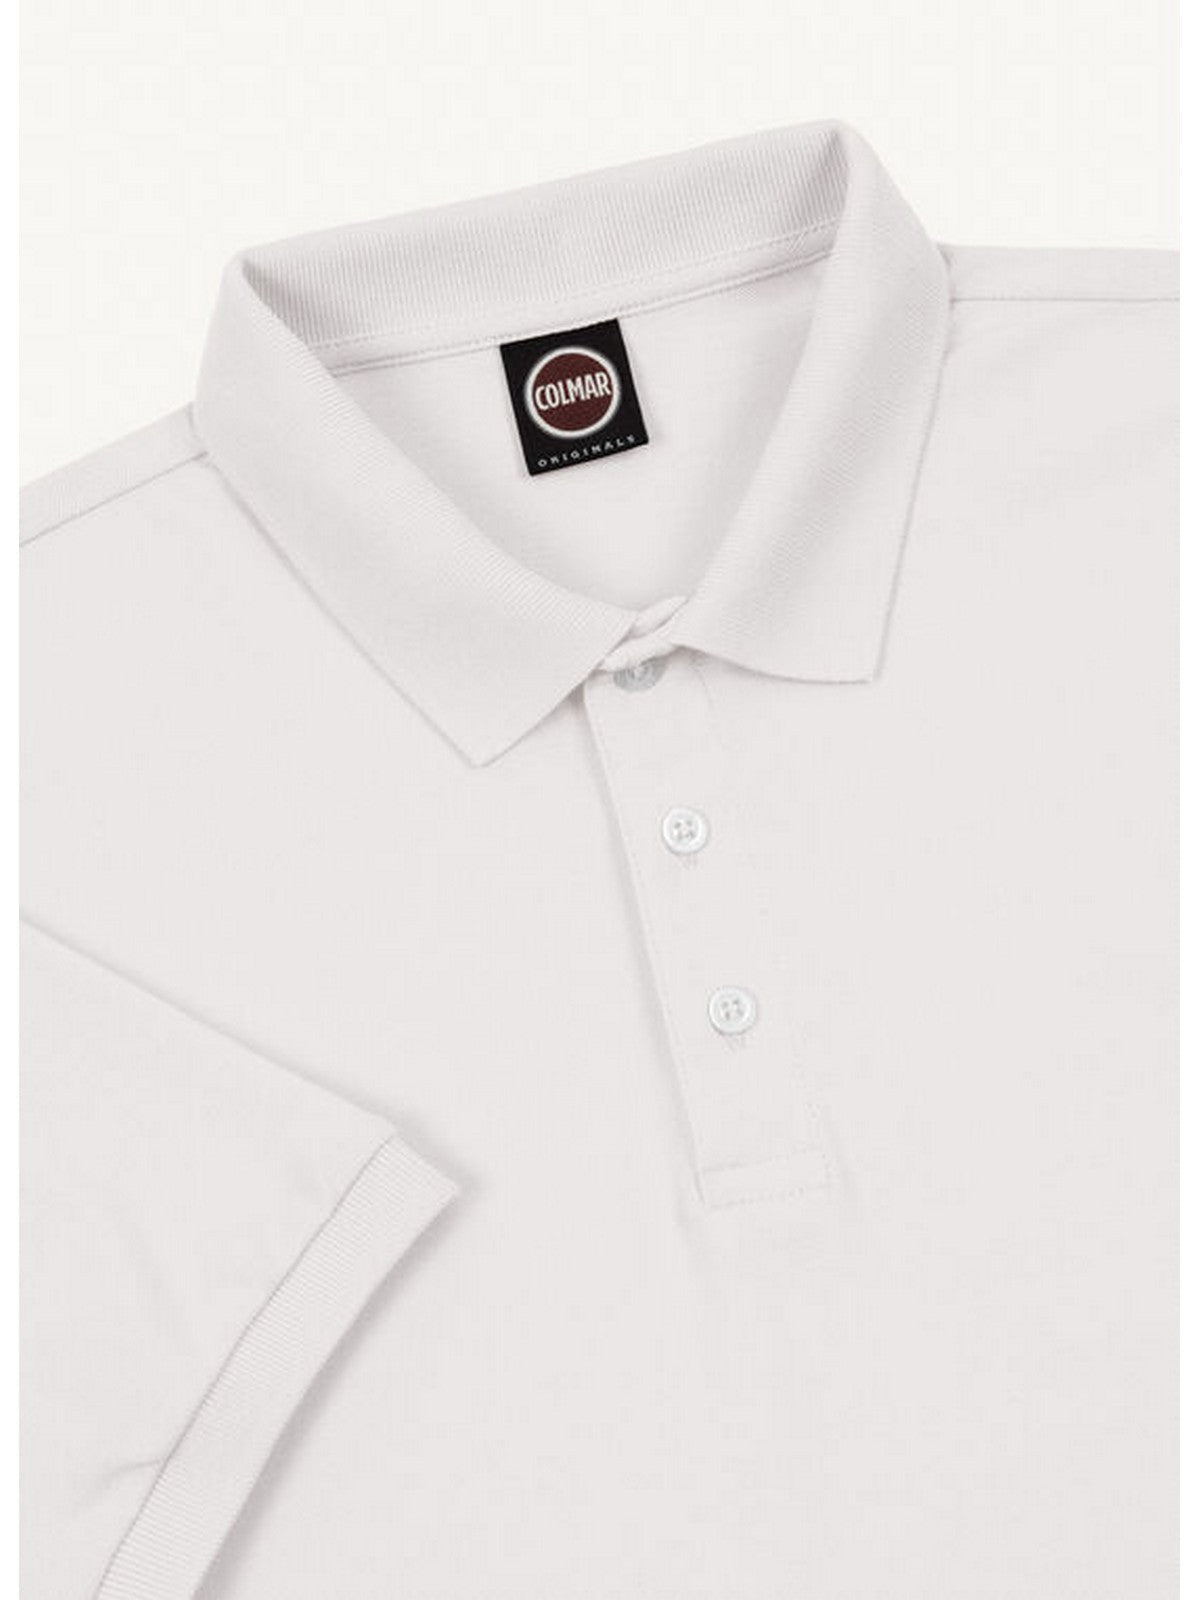 COLMAR T-Shirt et polo pour hommes 7646 4SH 01 Blanc